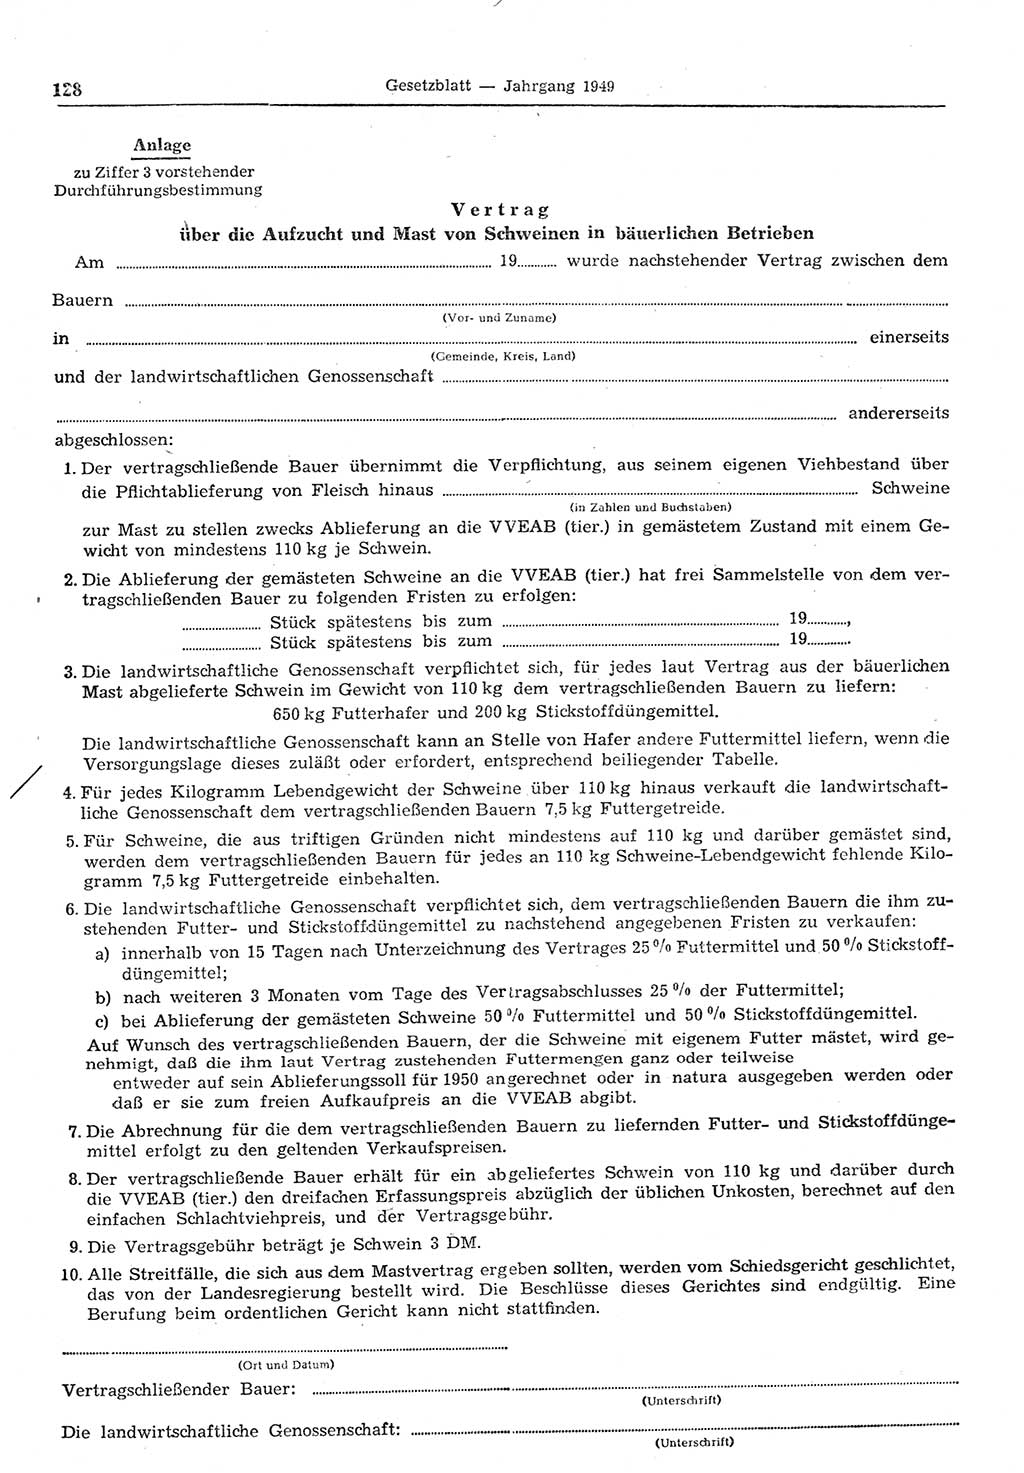 Gesetzblatt (GBl.) der Deutschen Demokratischen Republik (DDR) 1949, Seite 128 (GBl. DDR 1949, S. 128)